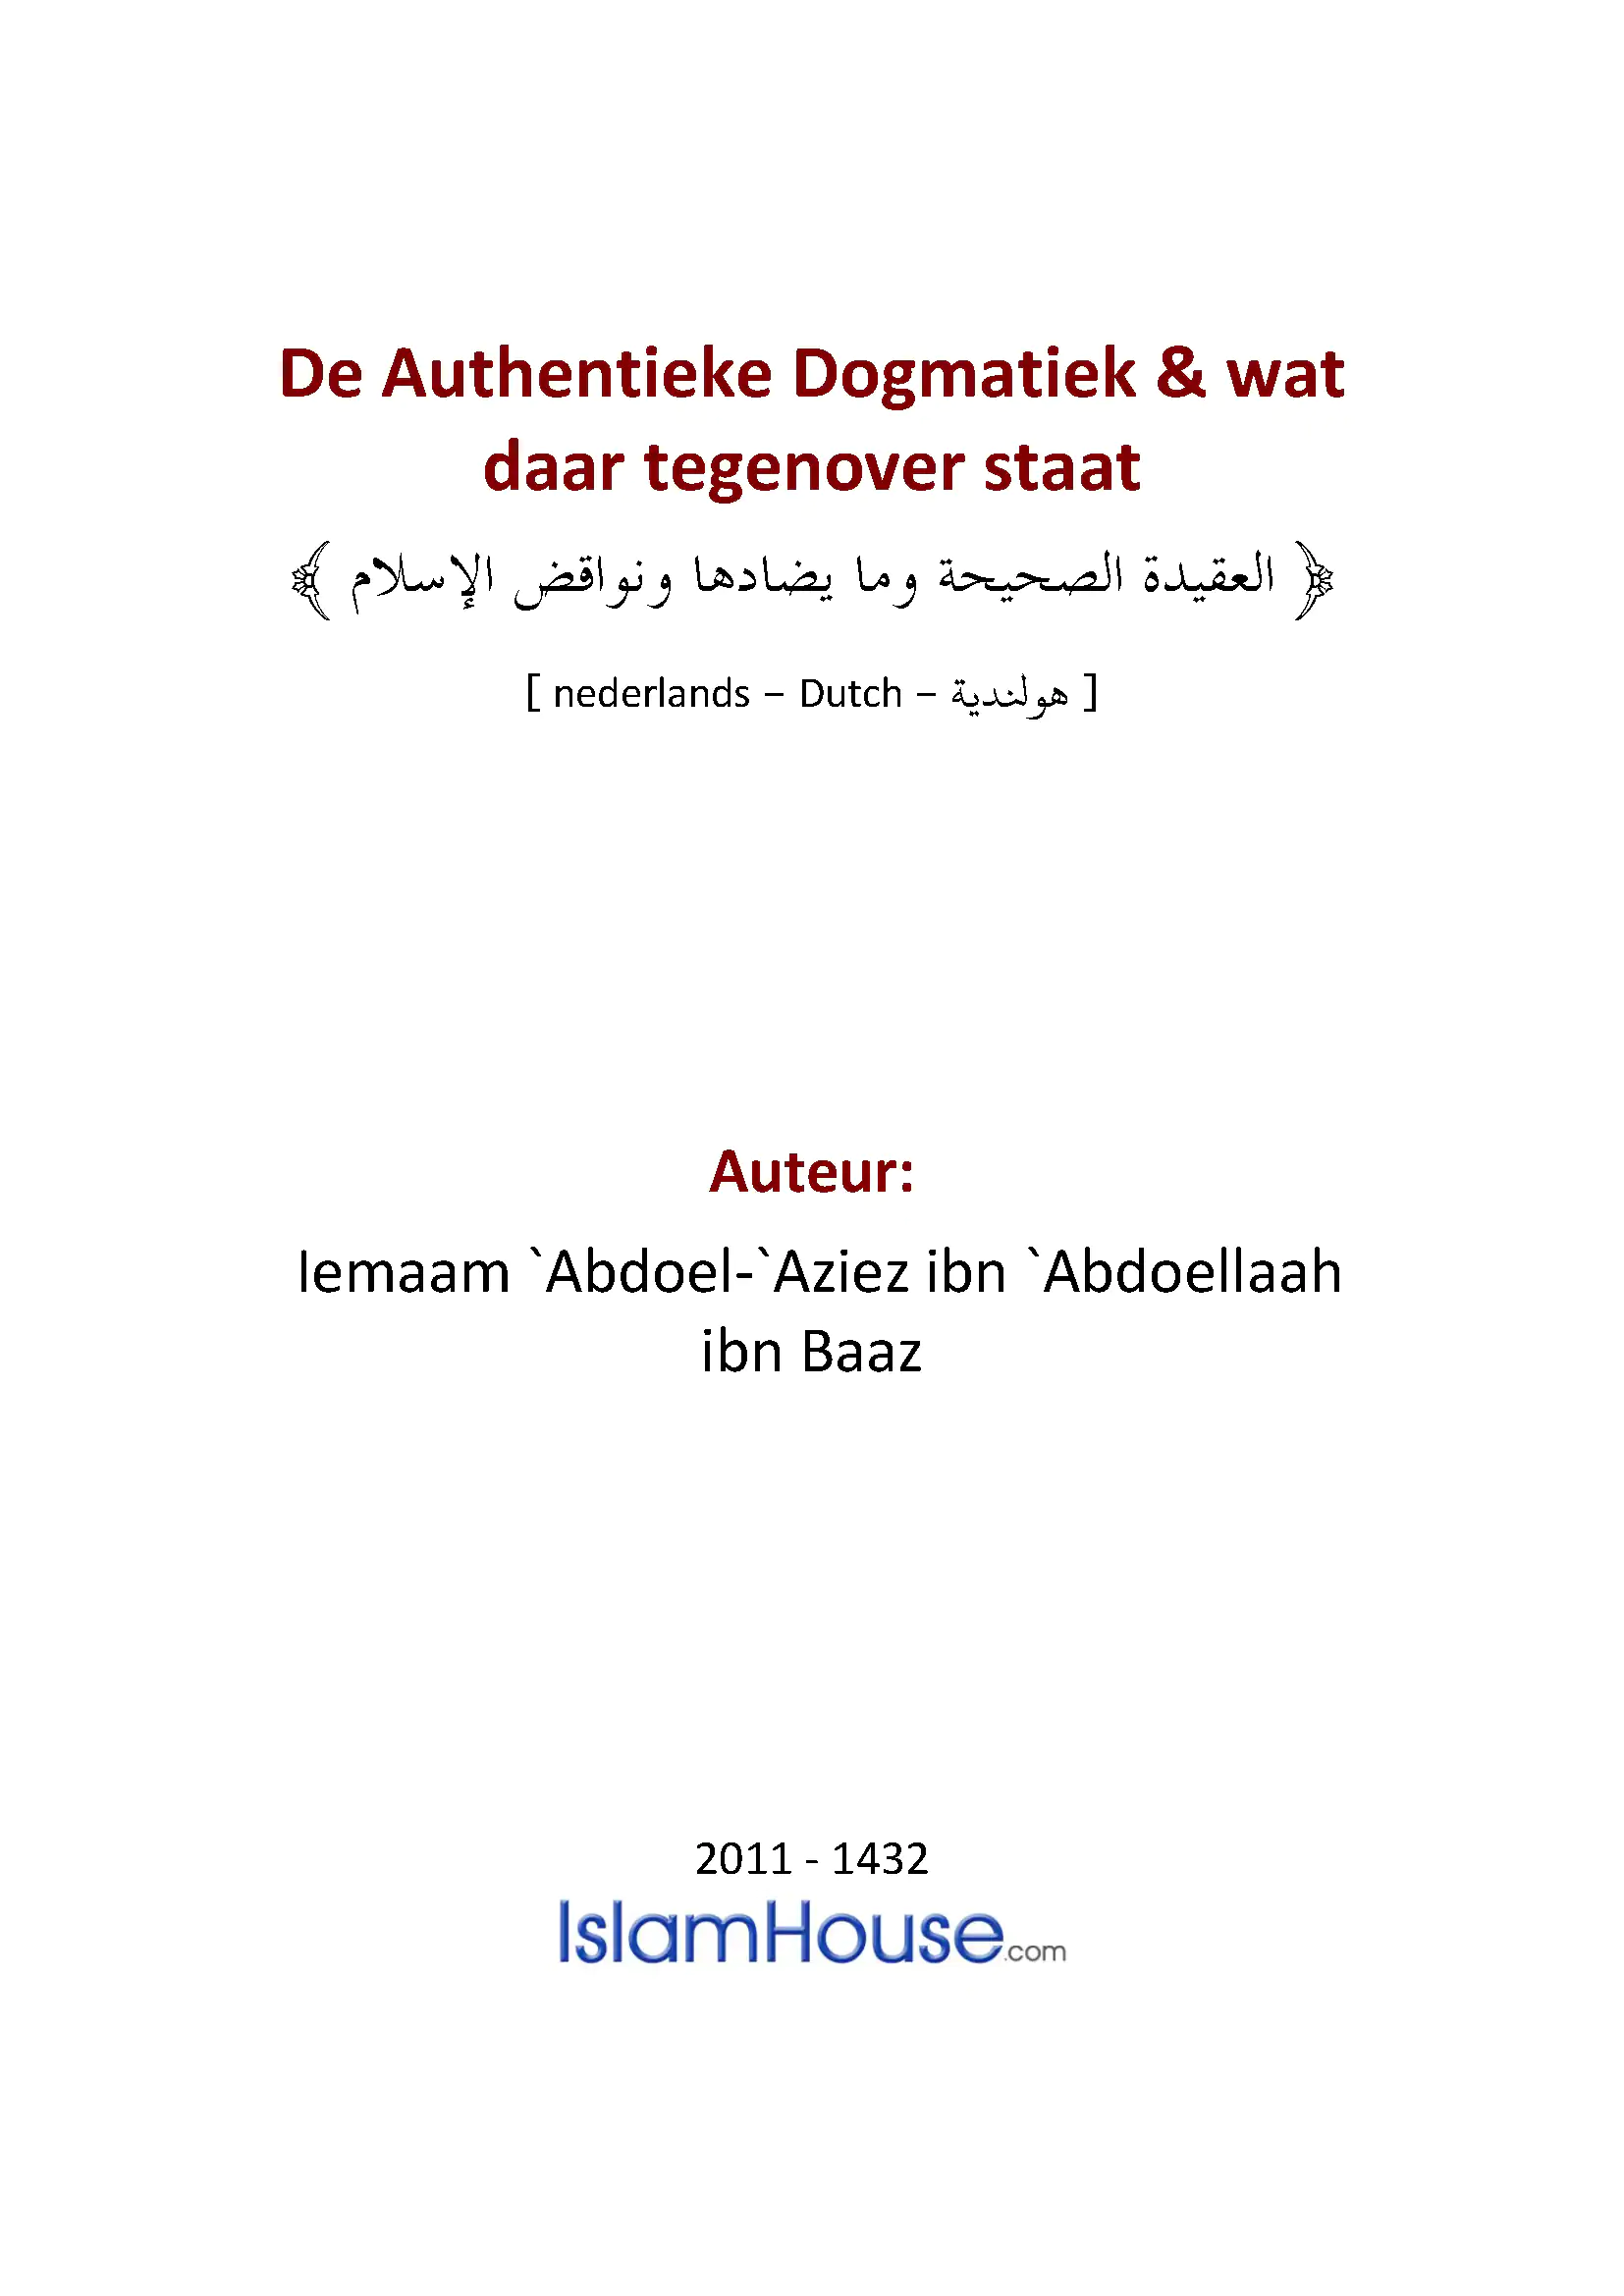 De Authentieke Dogmatiek & wat daar tegenover staat